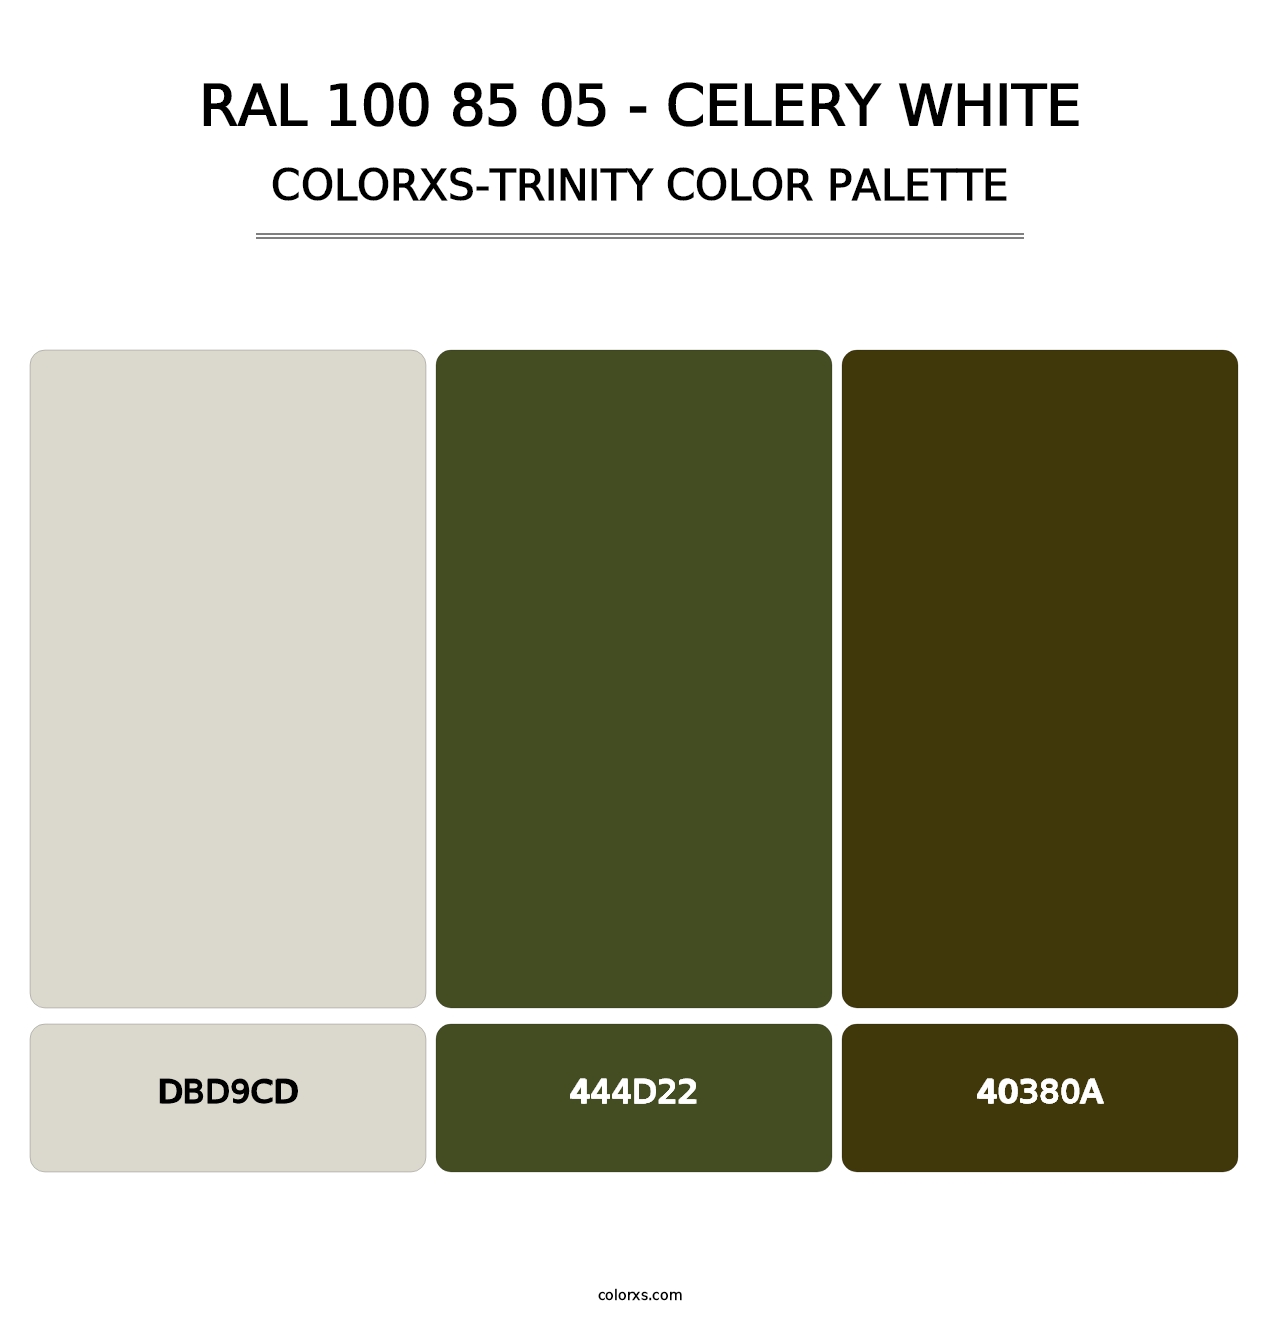 RAL 100 85 05 - Celery White - Colorxs Trinity Palette